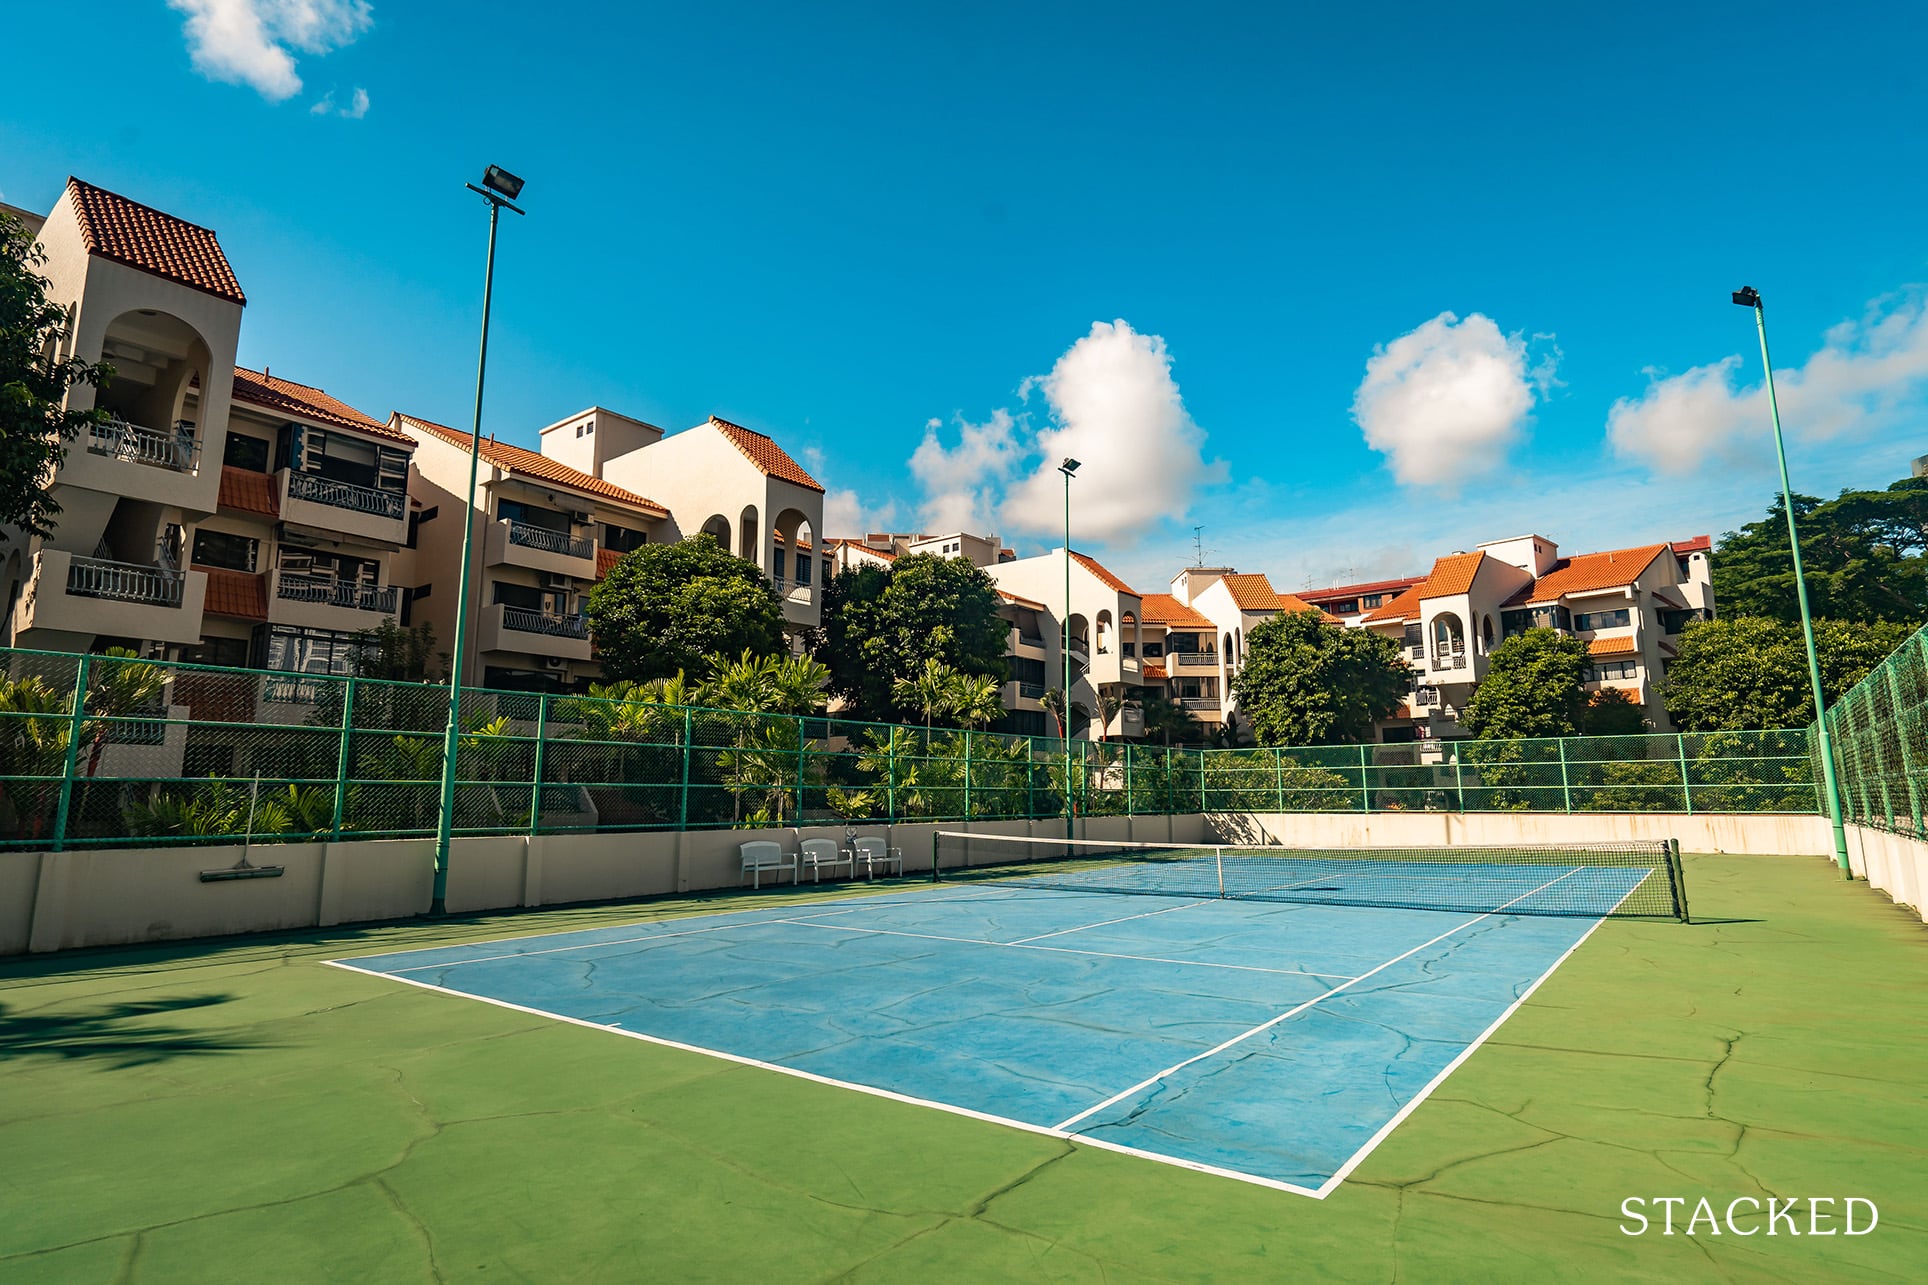 Spanish Village tennis courts